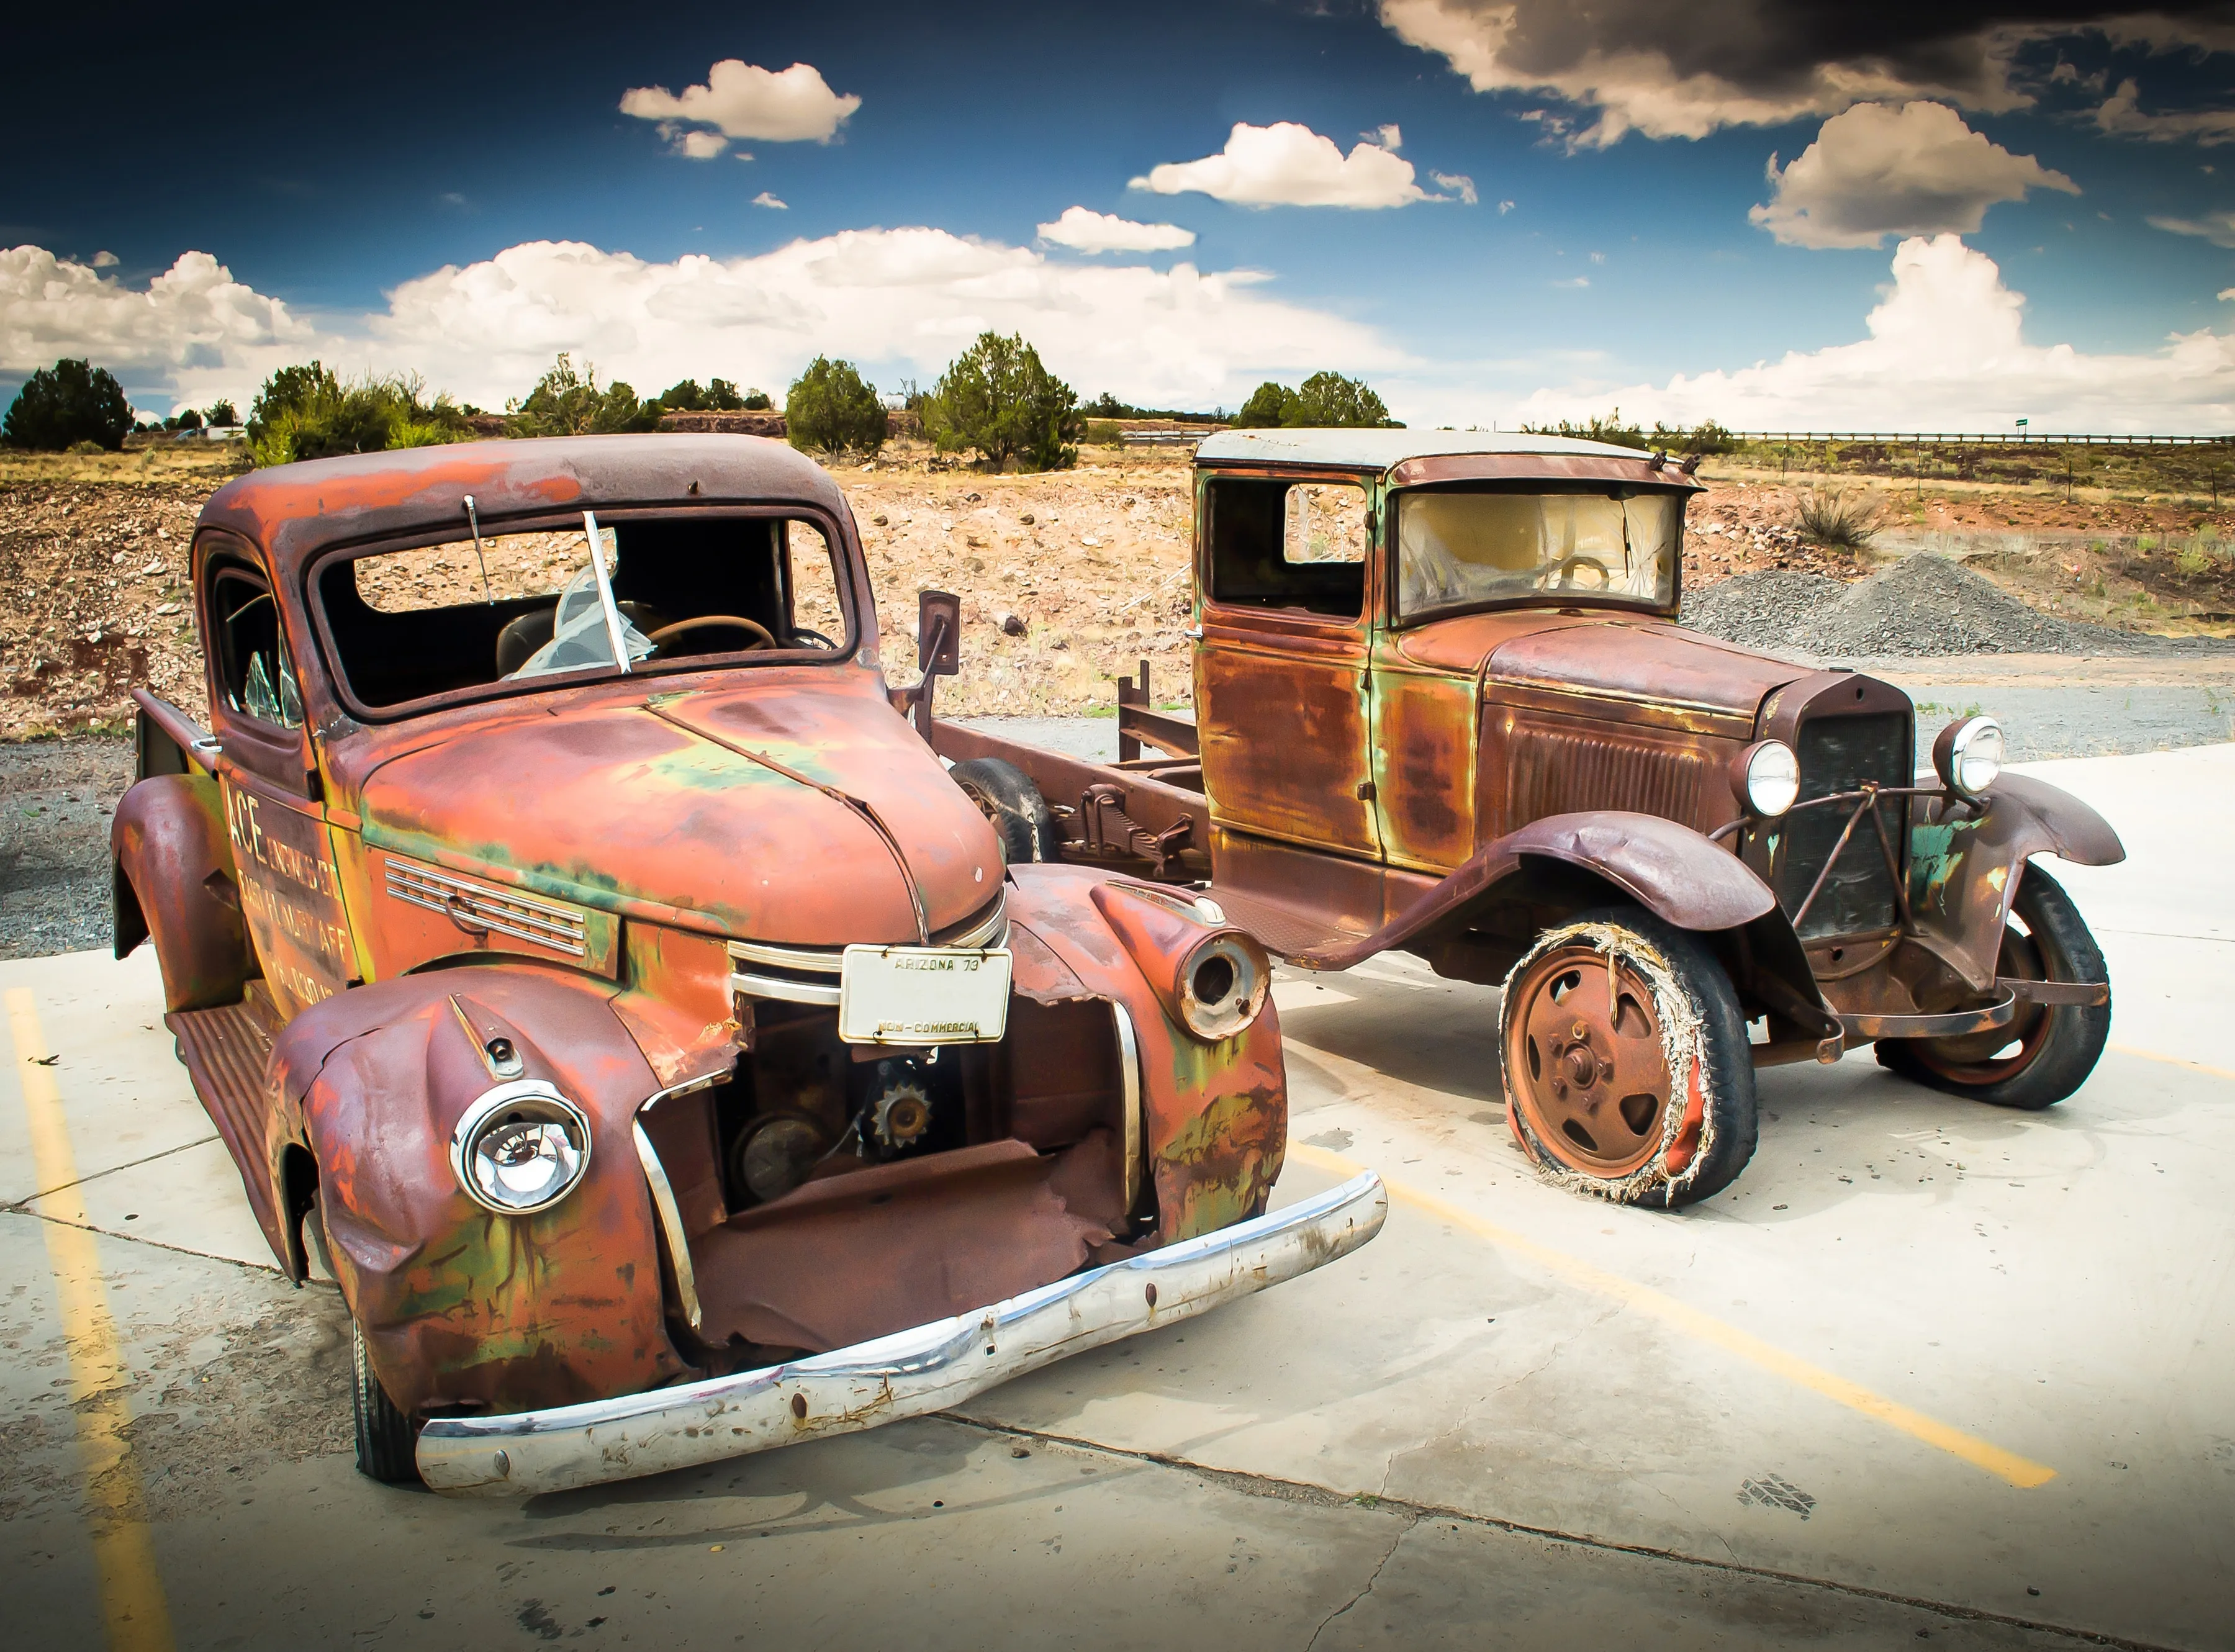 PAPERMOON Fototapete "Abandoned Old Cars" Tapeten Gr. B/L: 3 m x 2,23 m, Bahnen: 6 St., bunt (mehrfarbig) Fototapeten